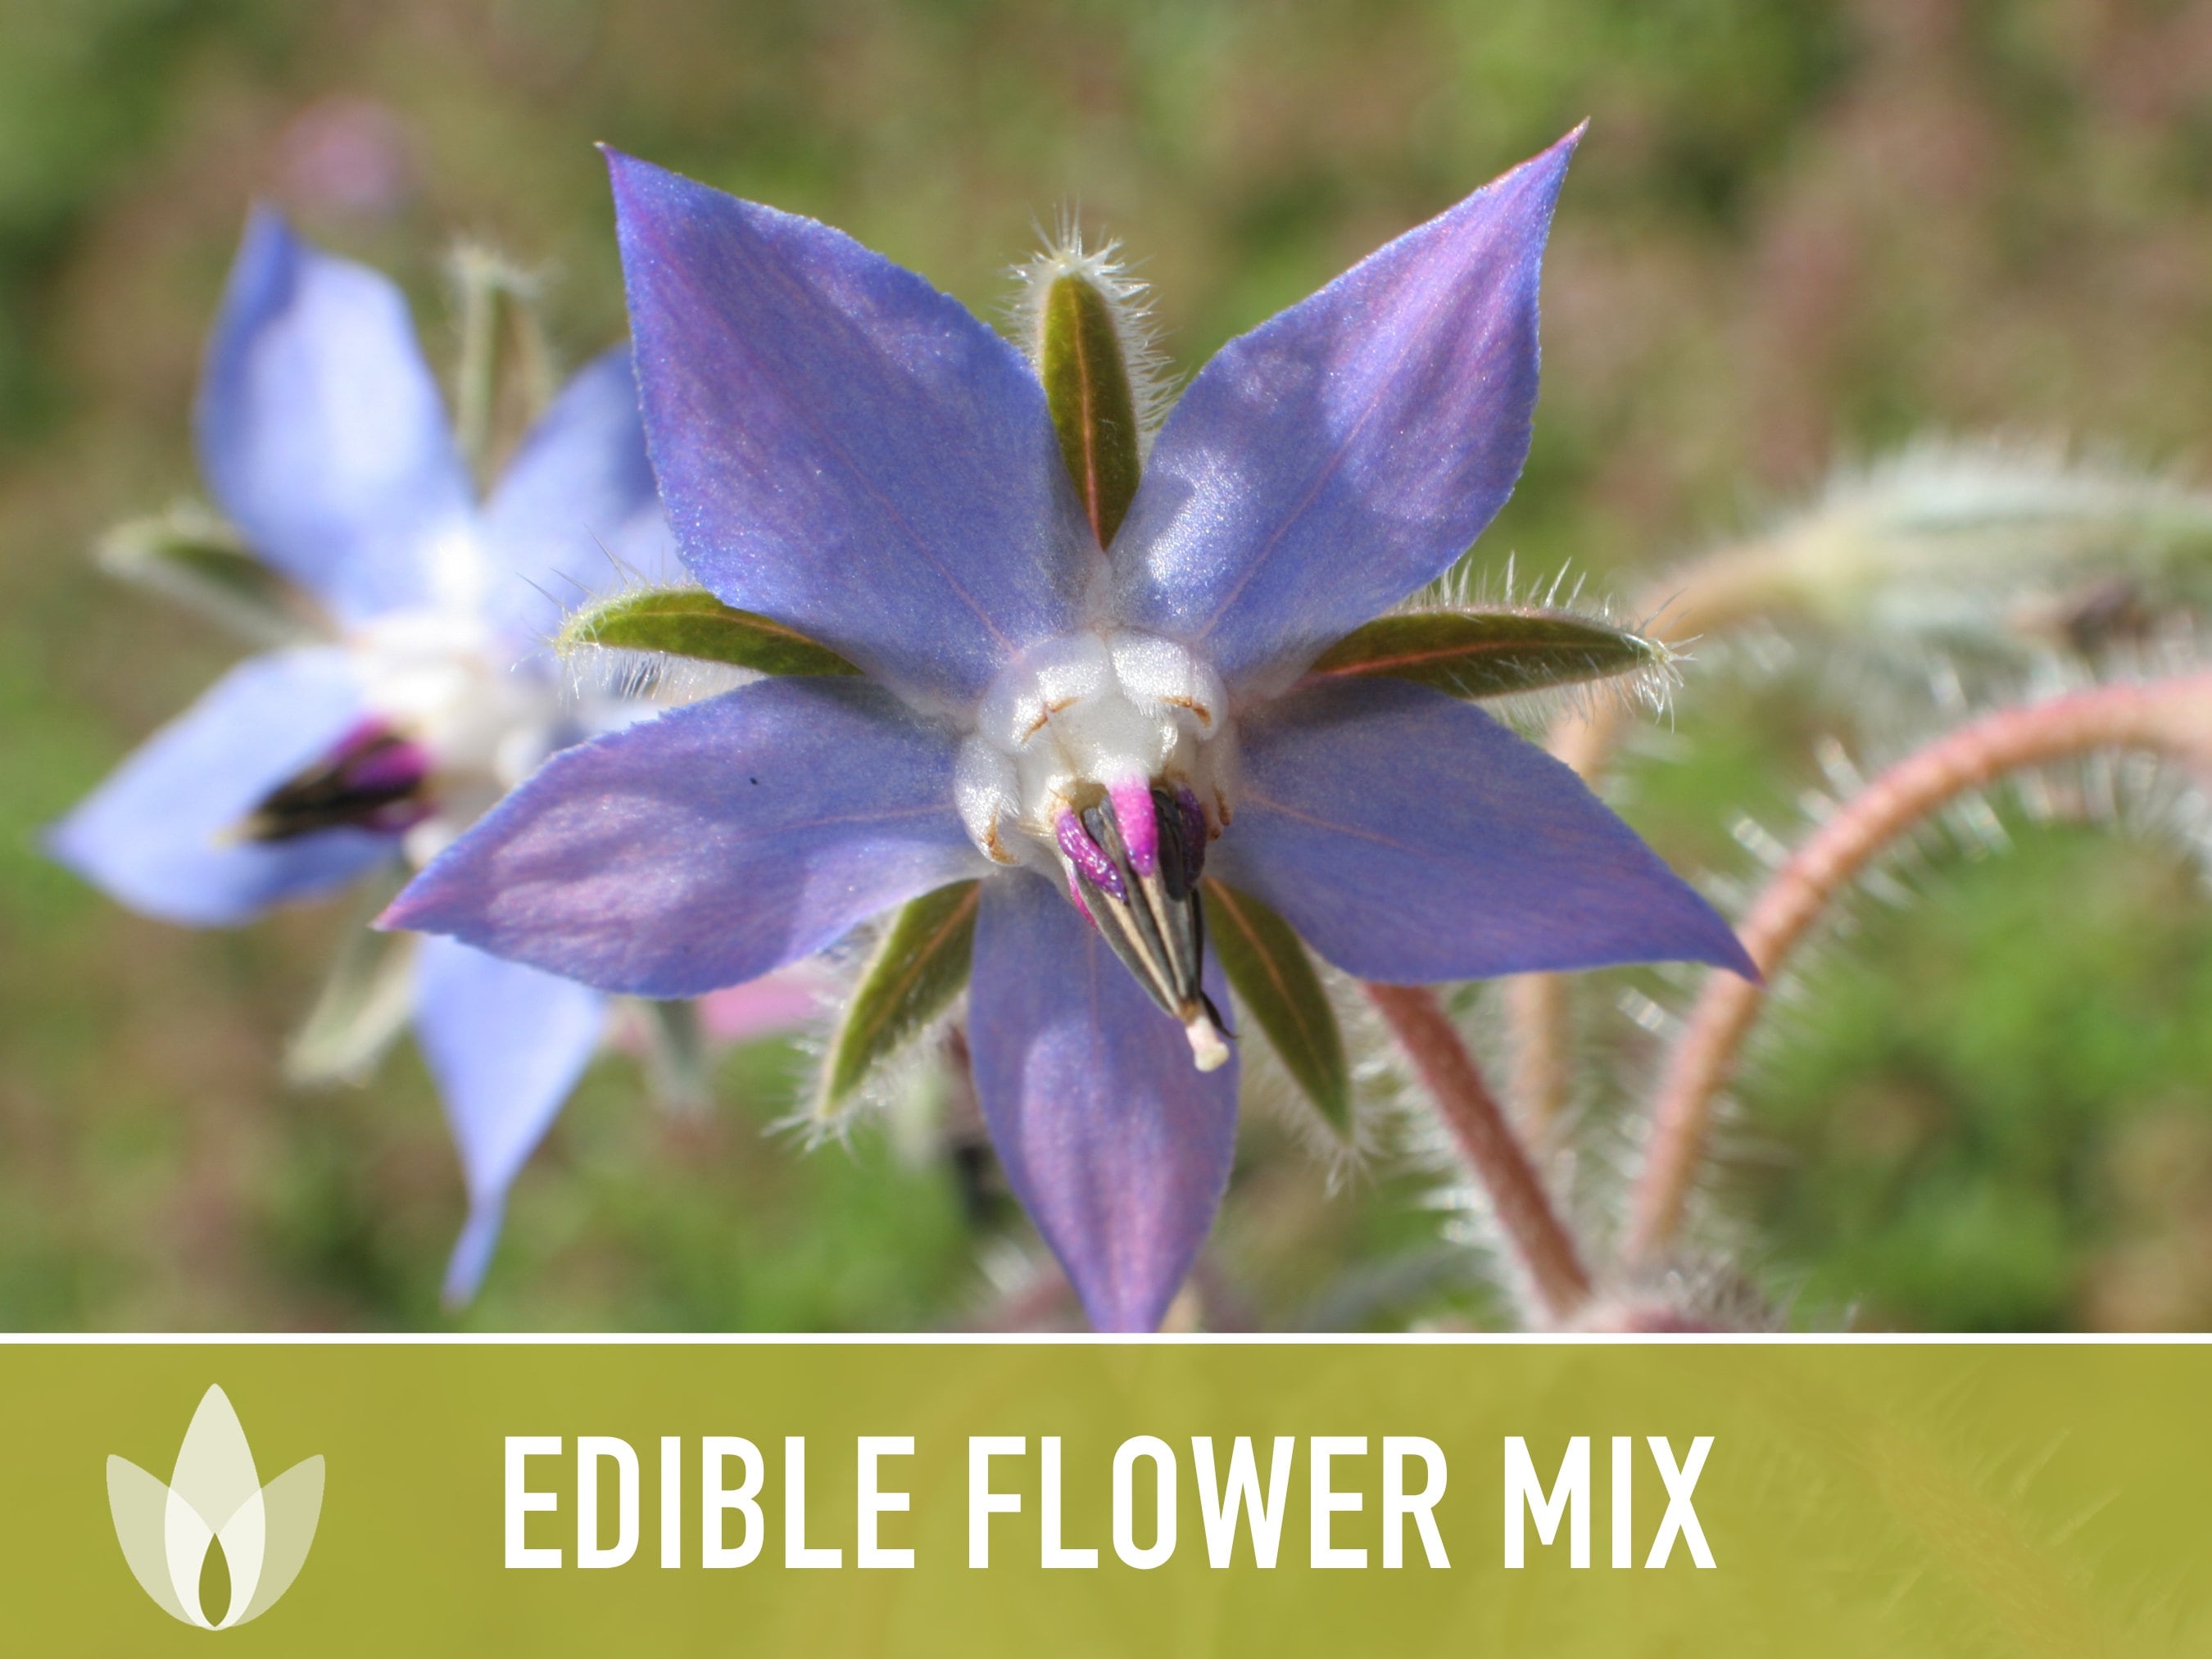 Edible Flower Mix Seeds